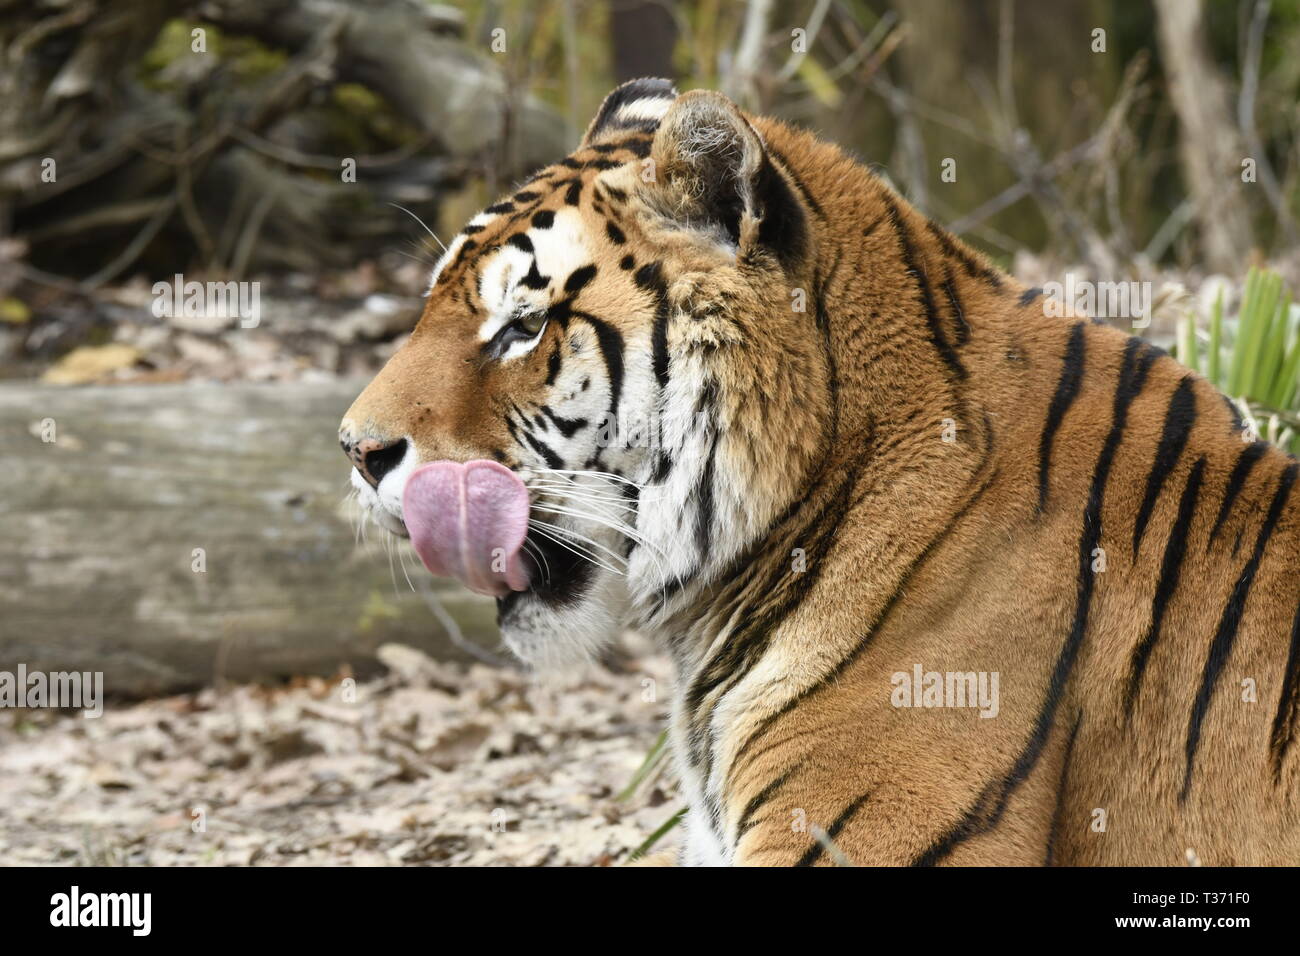 Tiger se reposant dans un zoo en italie Banque D'Images